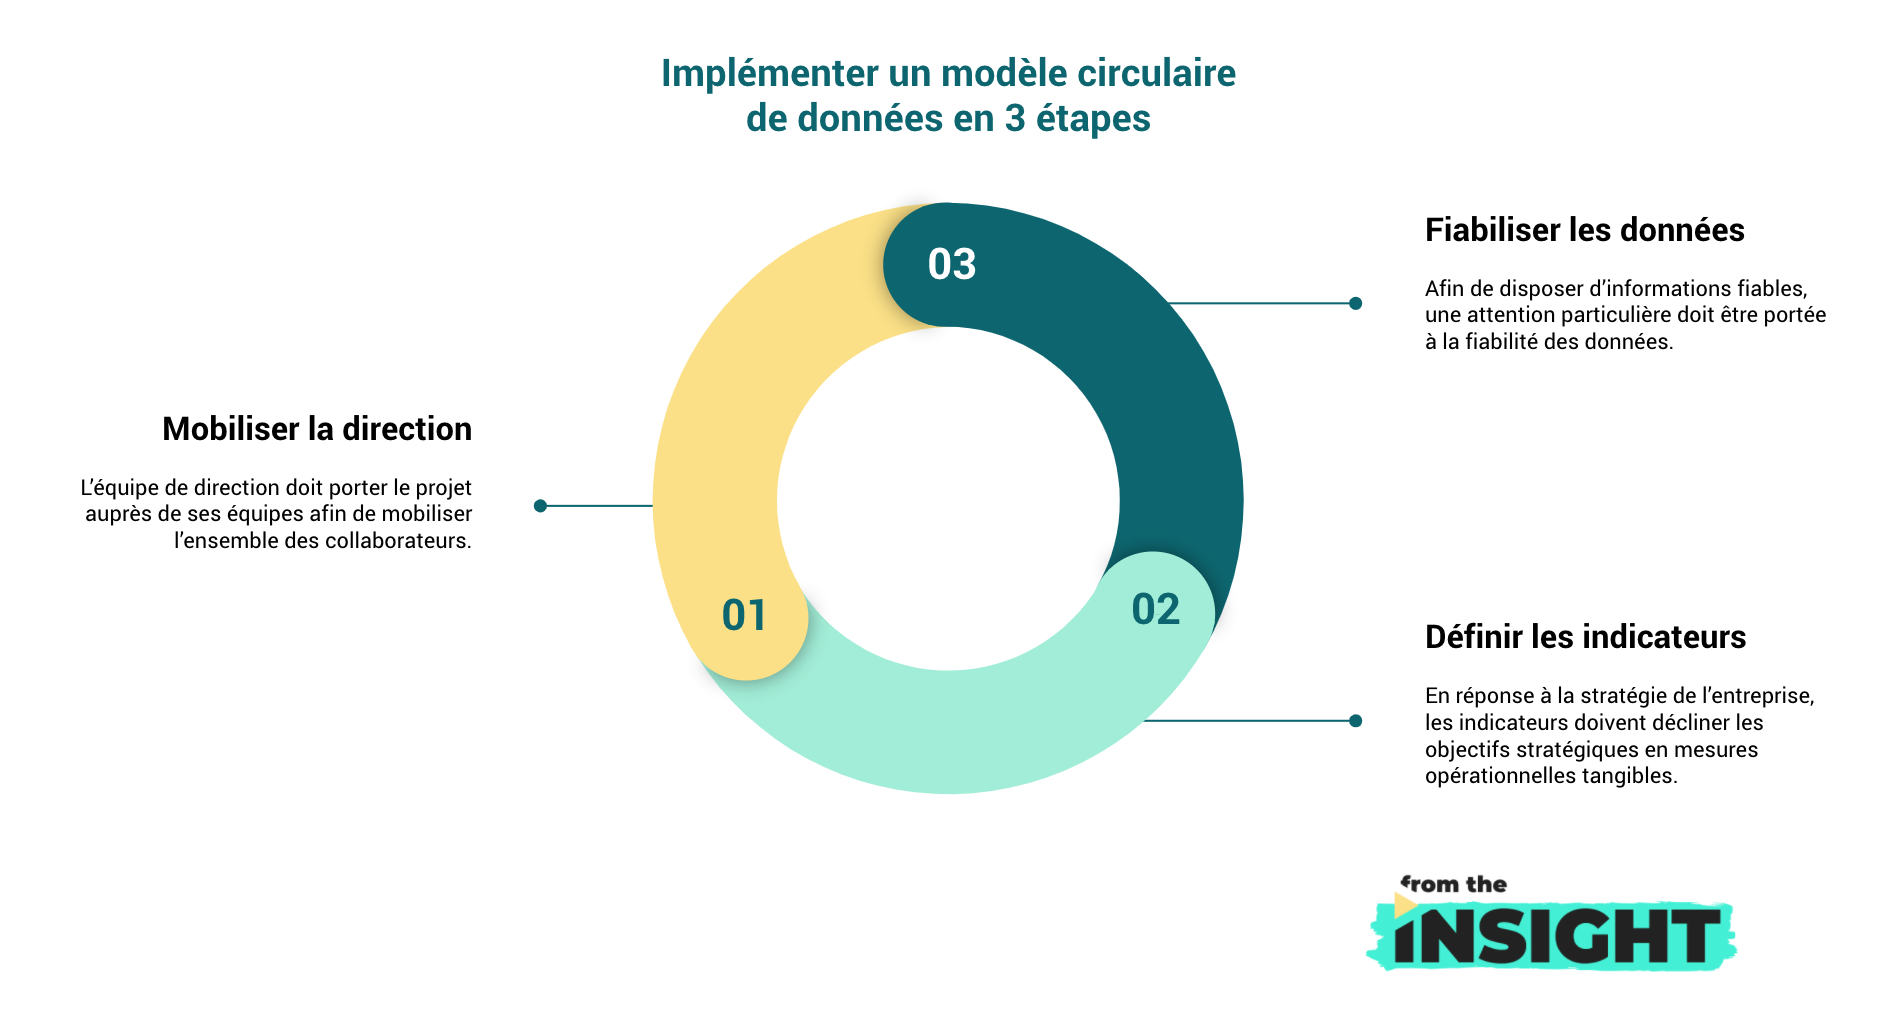 Implémenter un modèle circulaire de données en 3 étapes